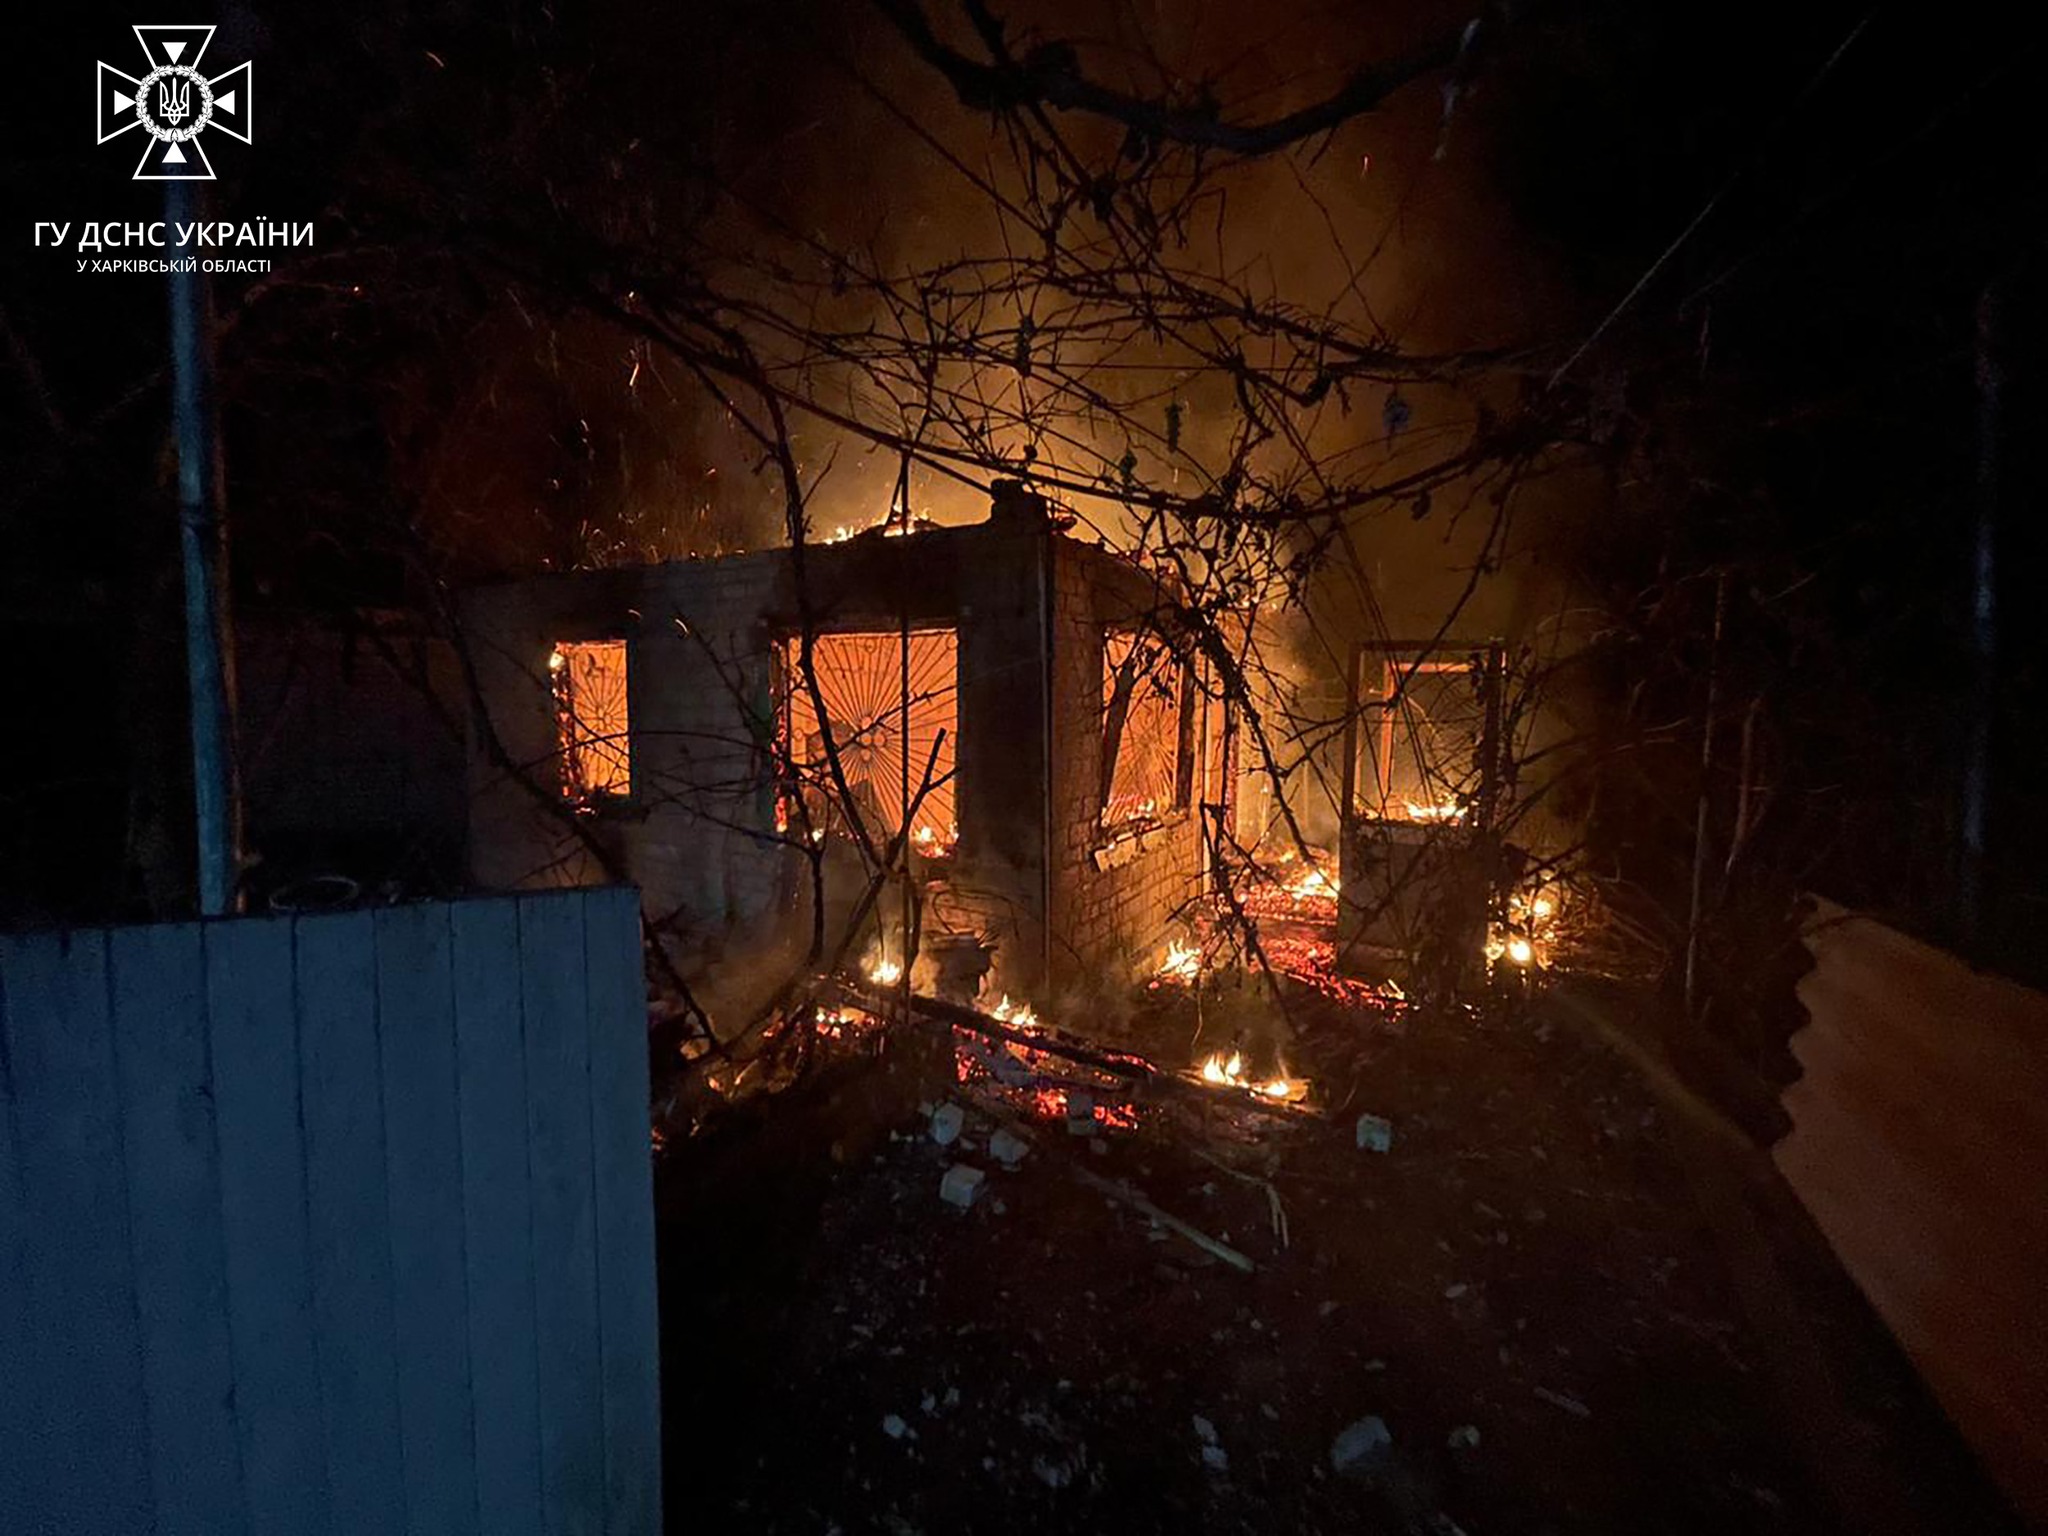 В Харьковской области погиб в пожаре 71-летний мужчина — ГСЧС